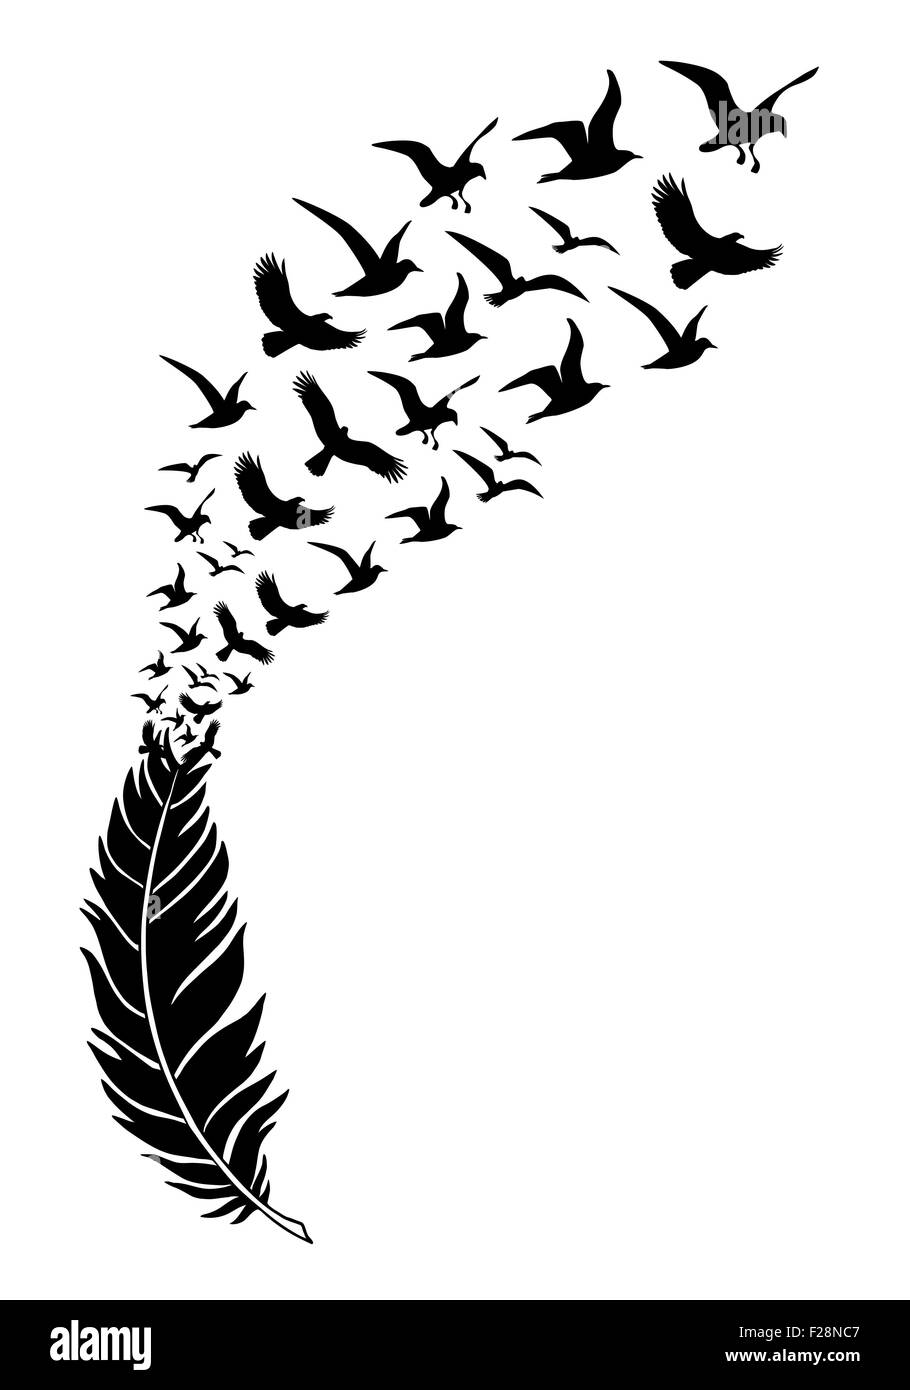 Piume con il volo libero uccelli, illustrazione vettoriale Foto Stock